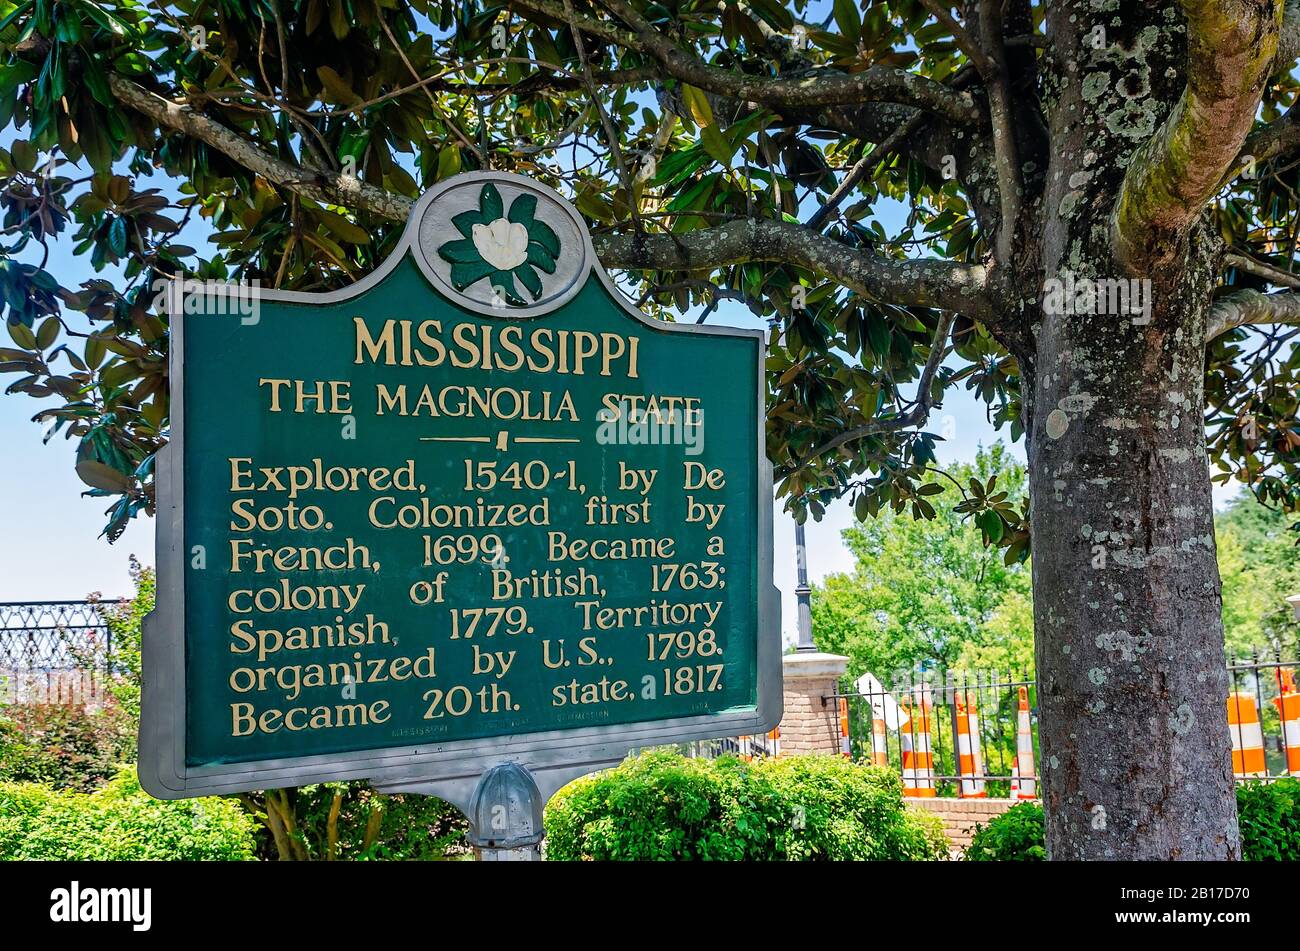 Eine historische Markierung unter einem magnolienbaum beschreibt die Geschichte von Mississippi, Dem Magnolia State, im Welcome Center in Vicksburg, Mississippi. Stockfoto